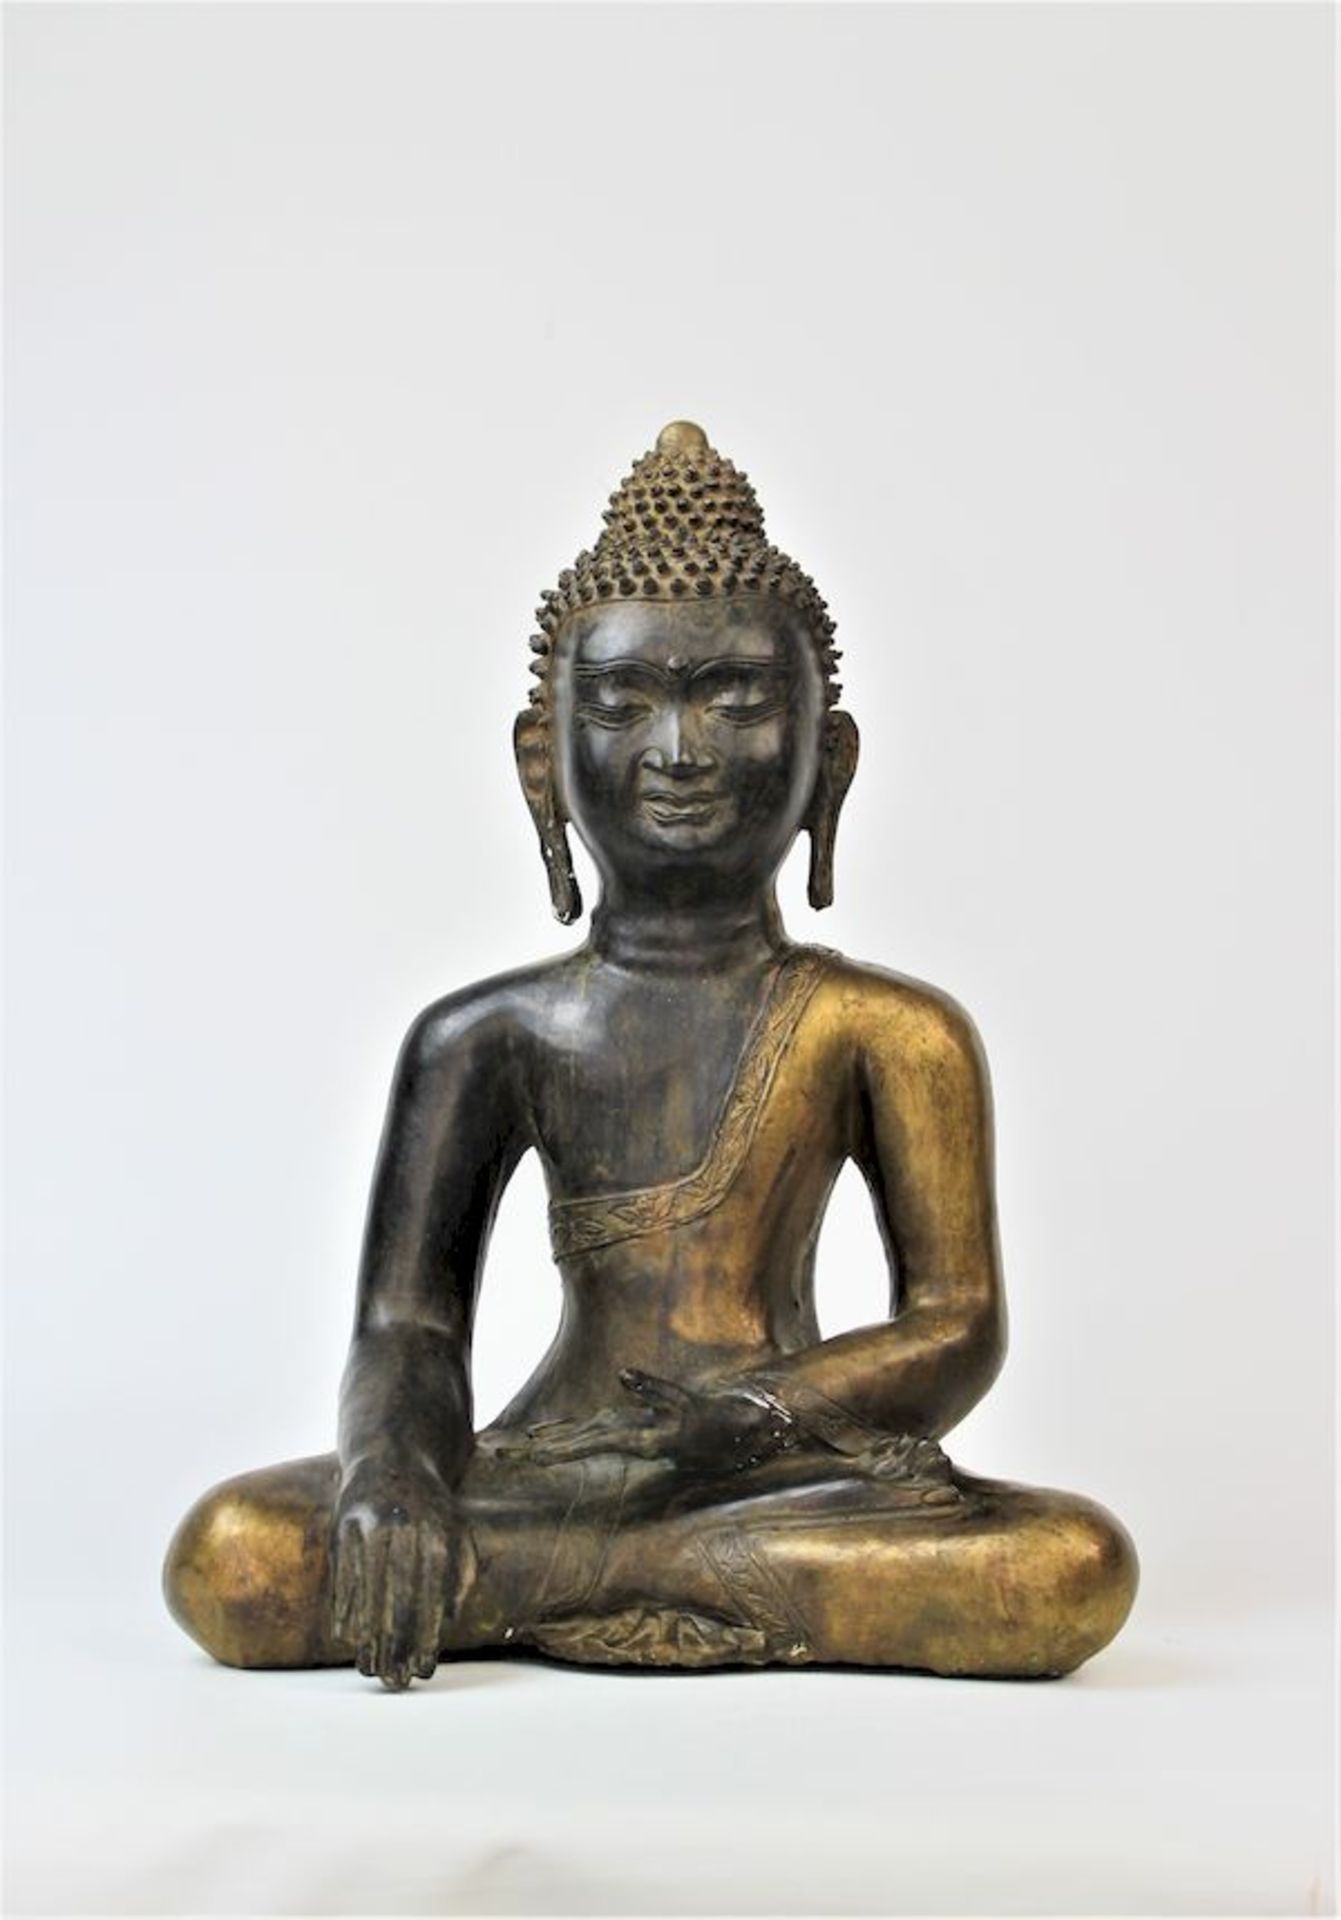 Großer Buddha Shakyamuni, Tibet wohl 16./17.Jhdt.Bronze, partiell feuervergoldet Boden neuzeitlich